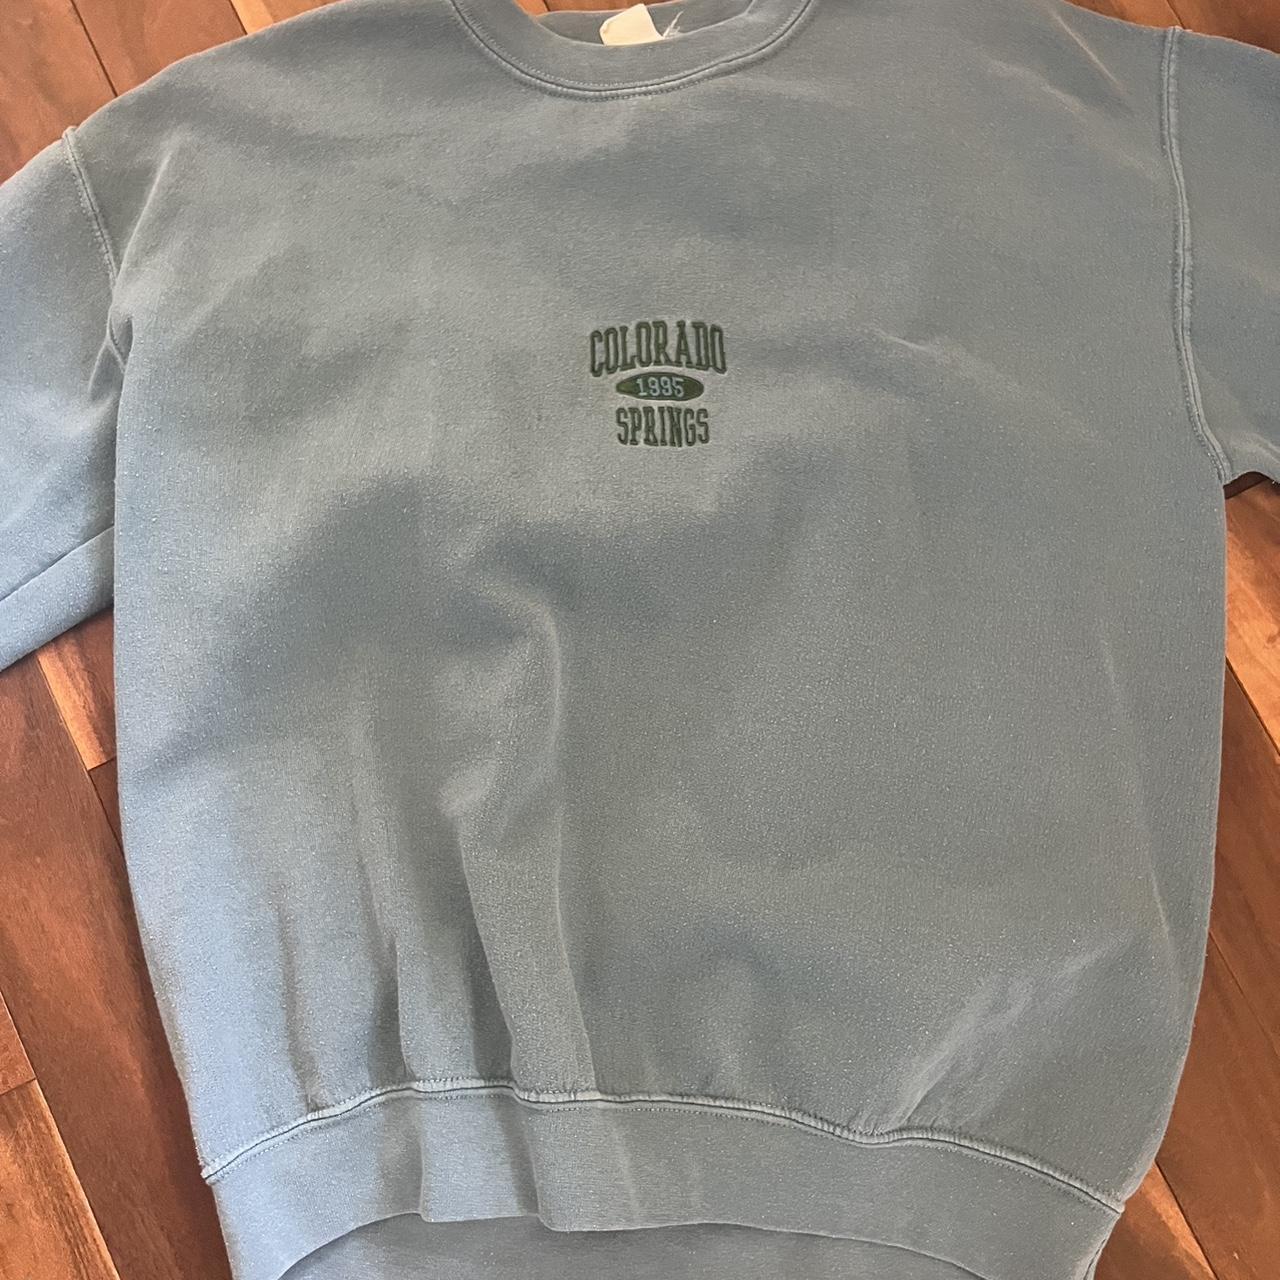 Blue Colorado springs sweatshirt - Depop